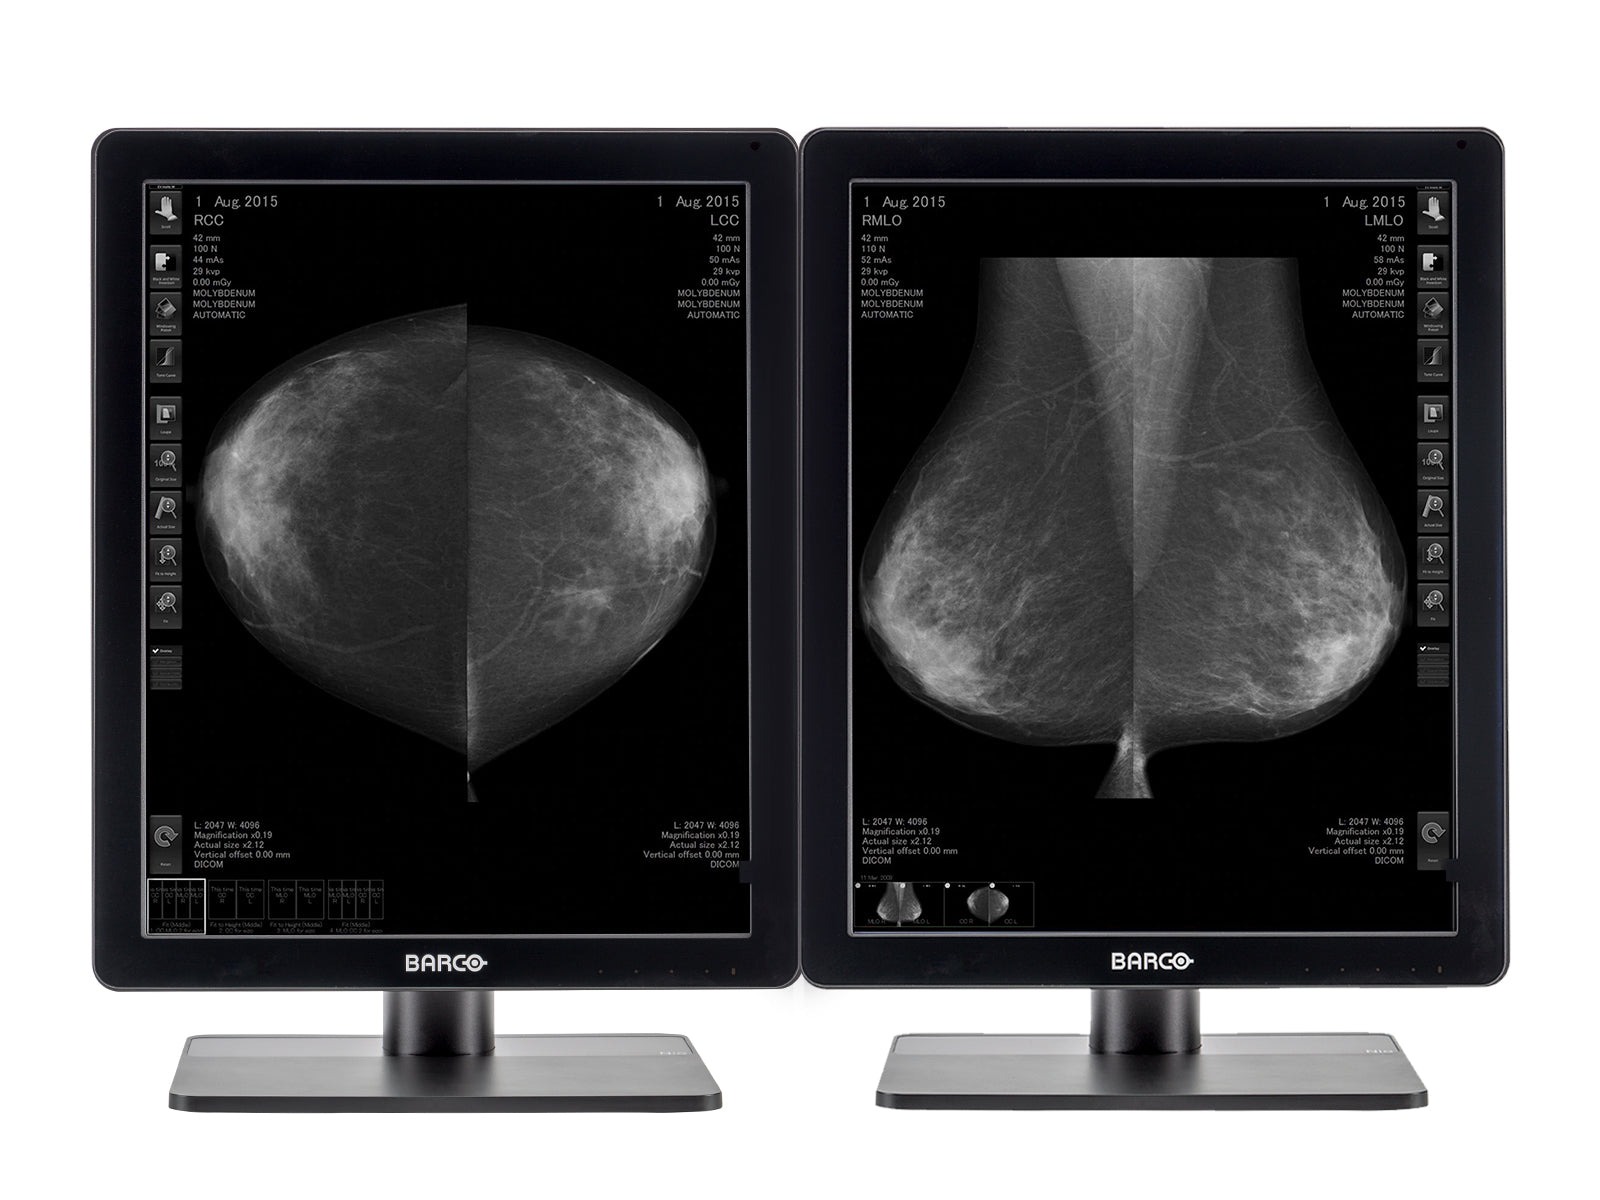 Estación completa de lectura de mamografía | Barco Escala de grises de 5 MP | Estación de trabajo HP (5221Z6R) Monitors.com